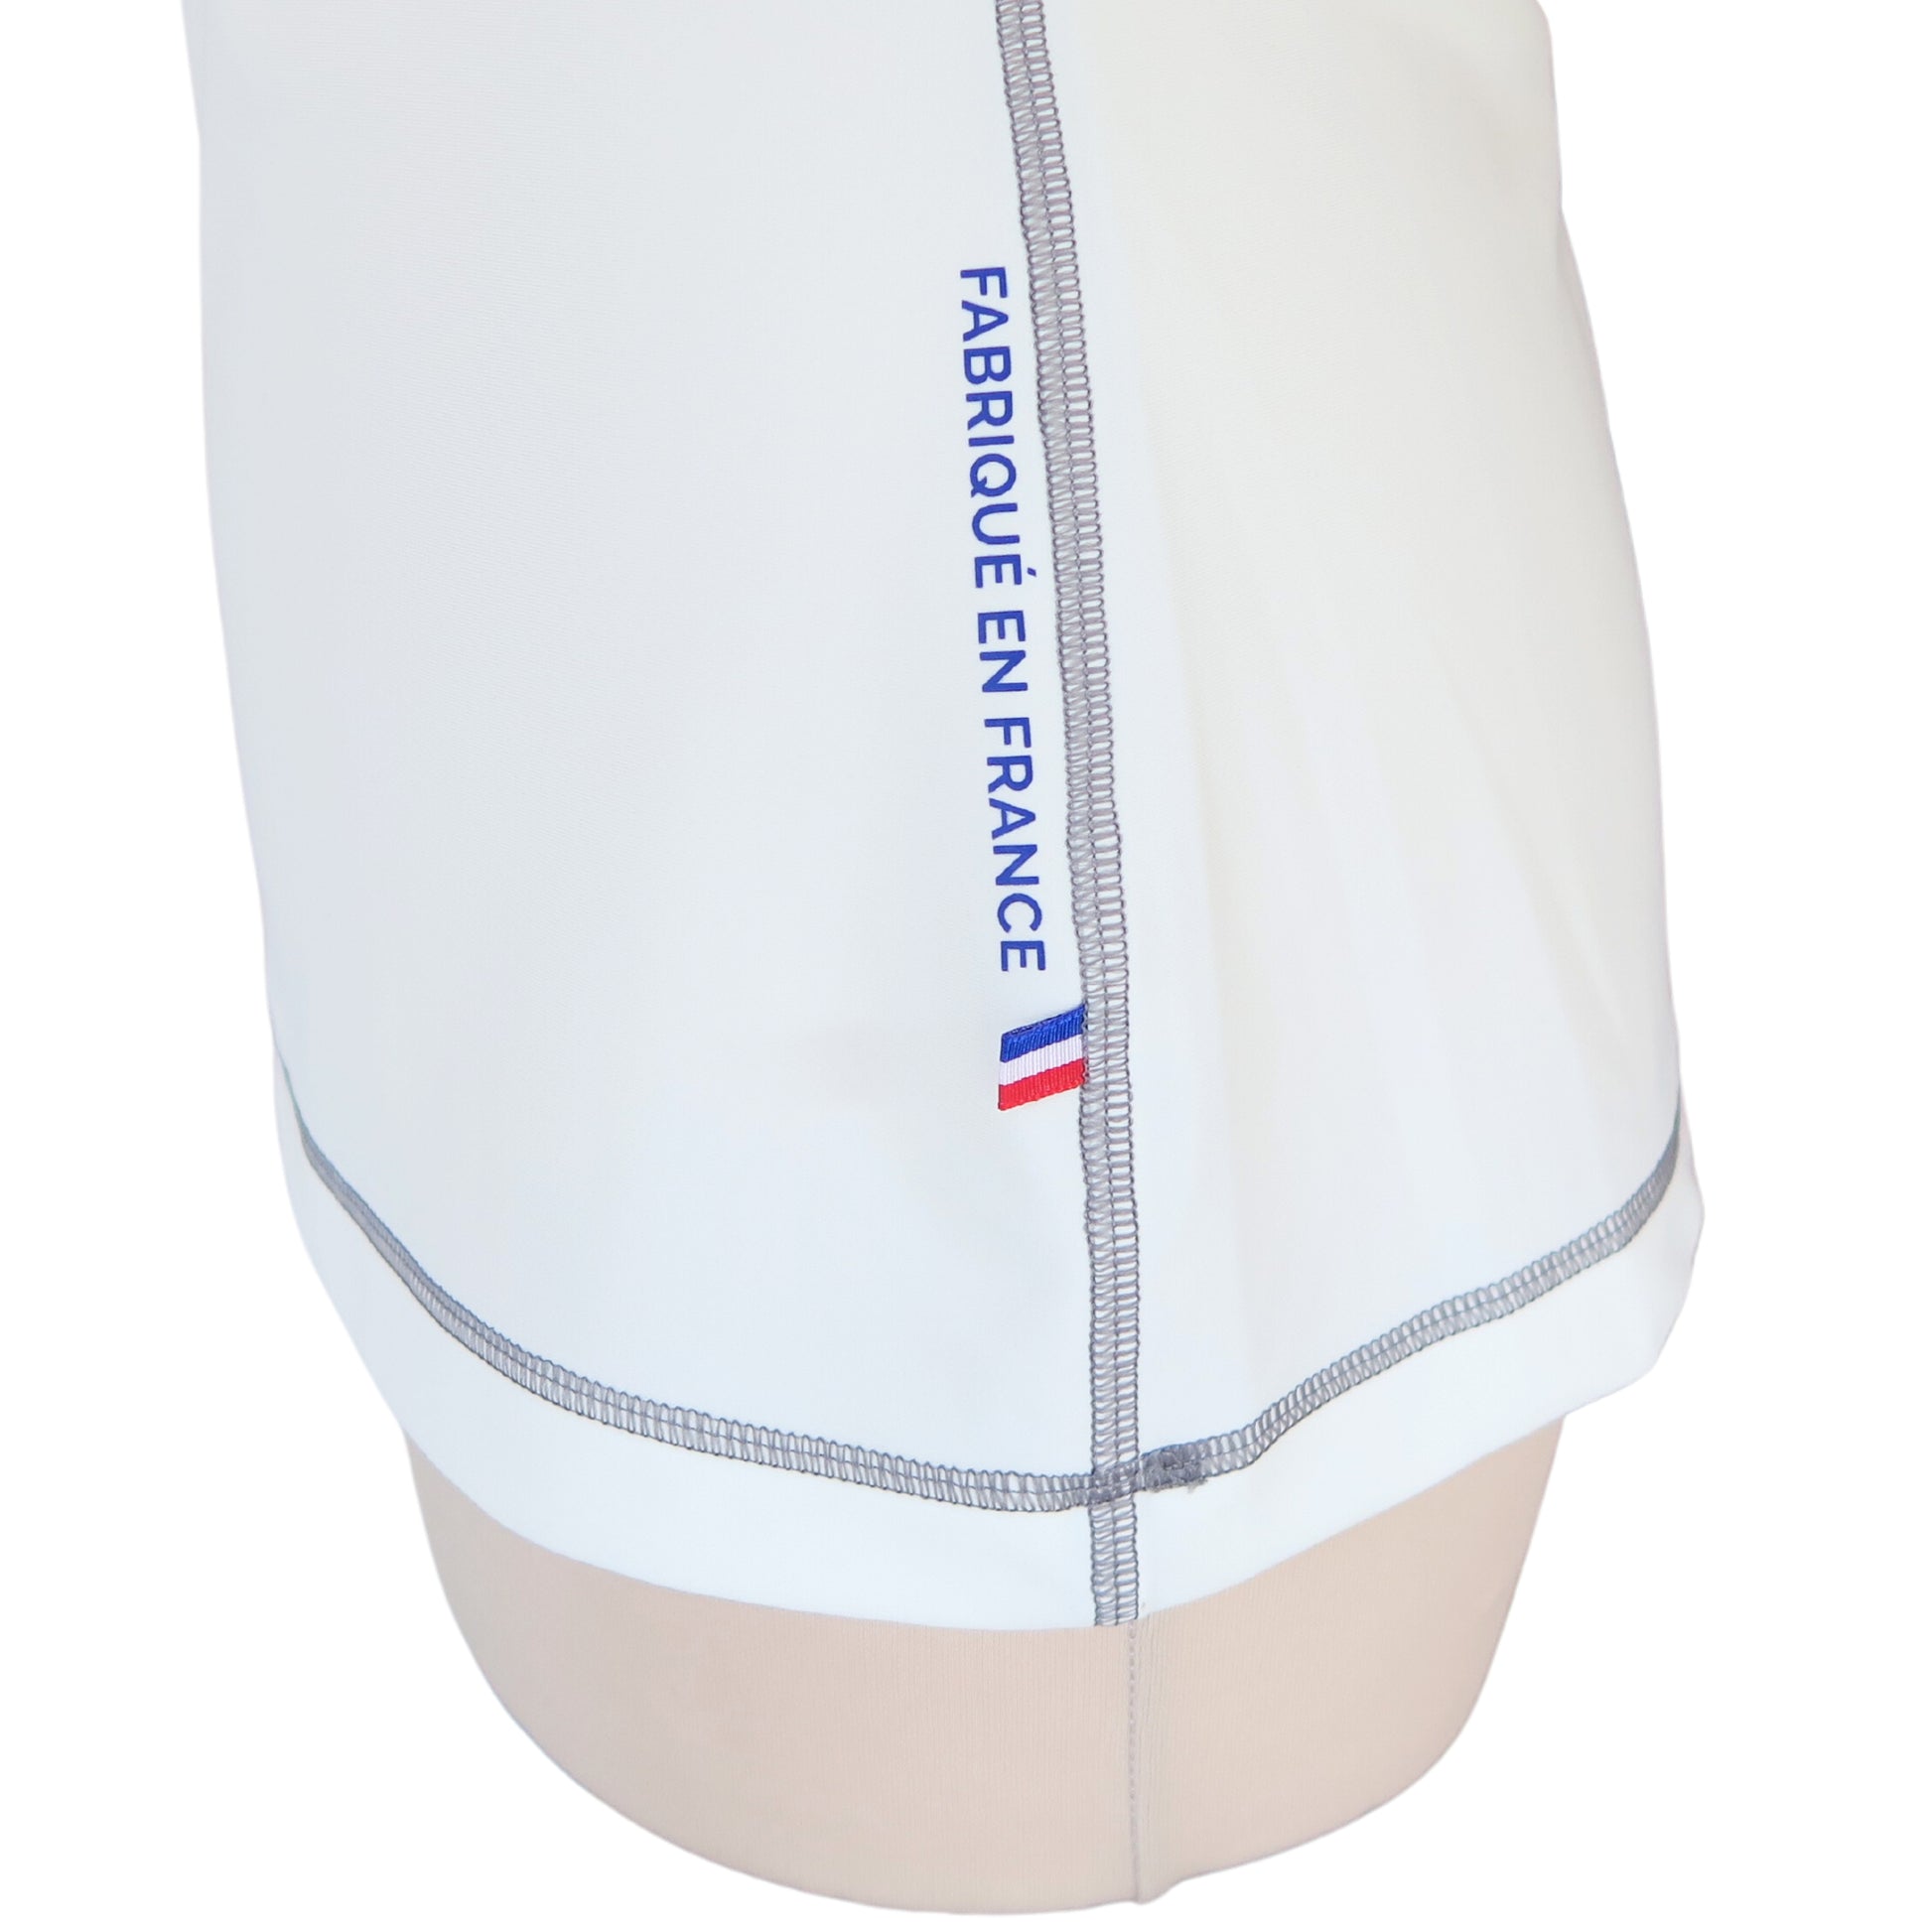 ashguard lycra anti uv femme manches courtes blanc fabriqué en France UPF50+ Made in France avec des filets de pêche recyclés, écolo, durable, top maillot tee-shirt eco responsable F2M ruban tricolore